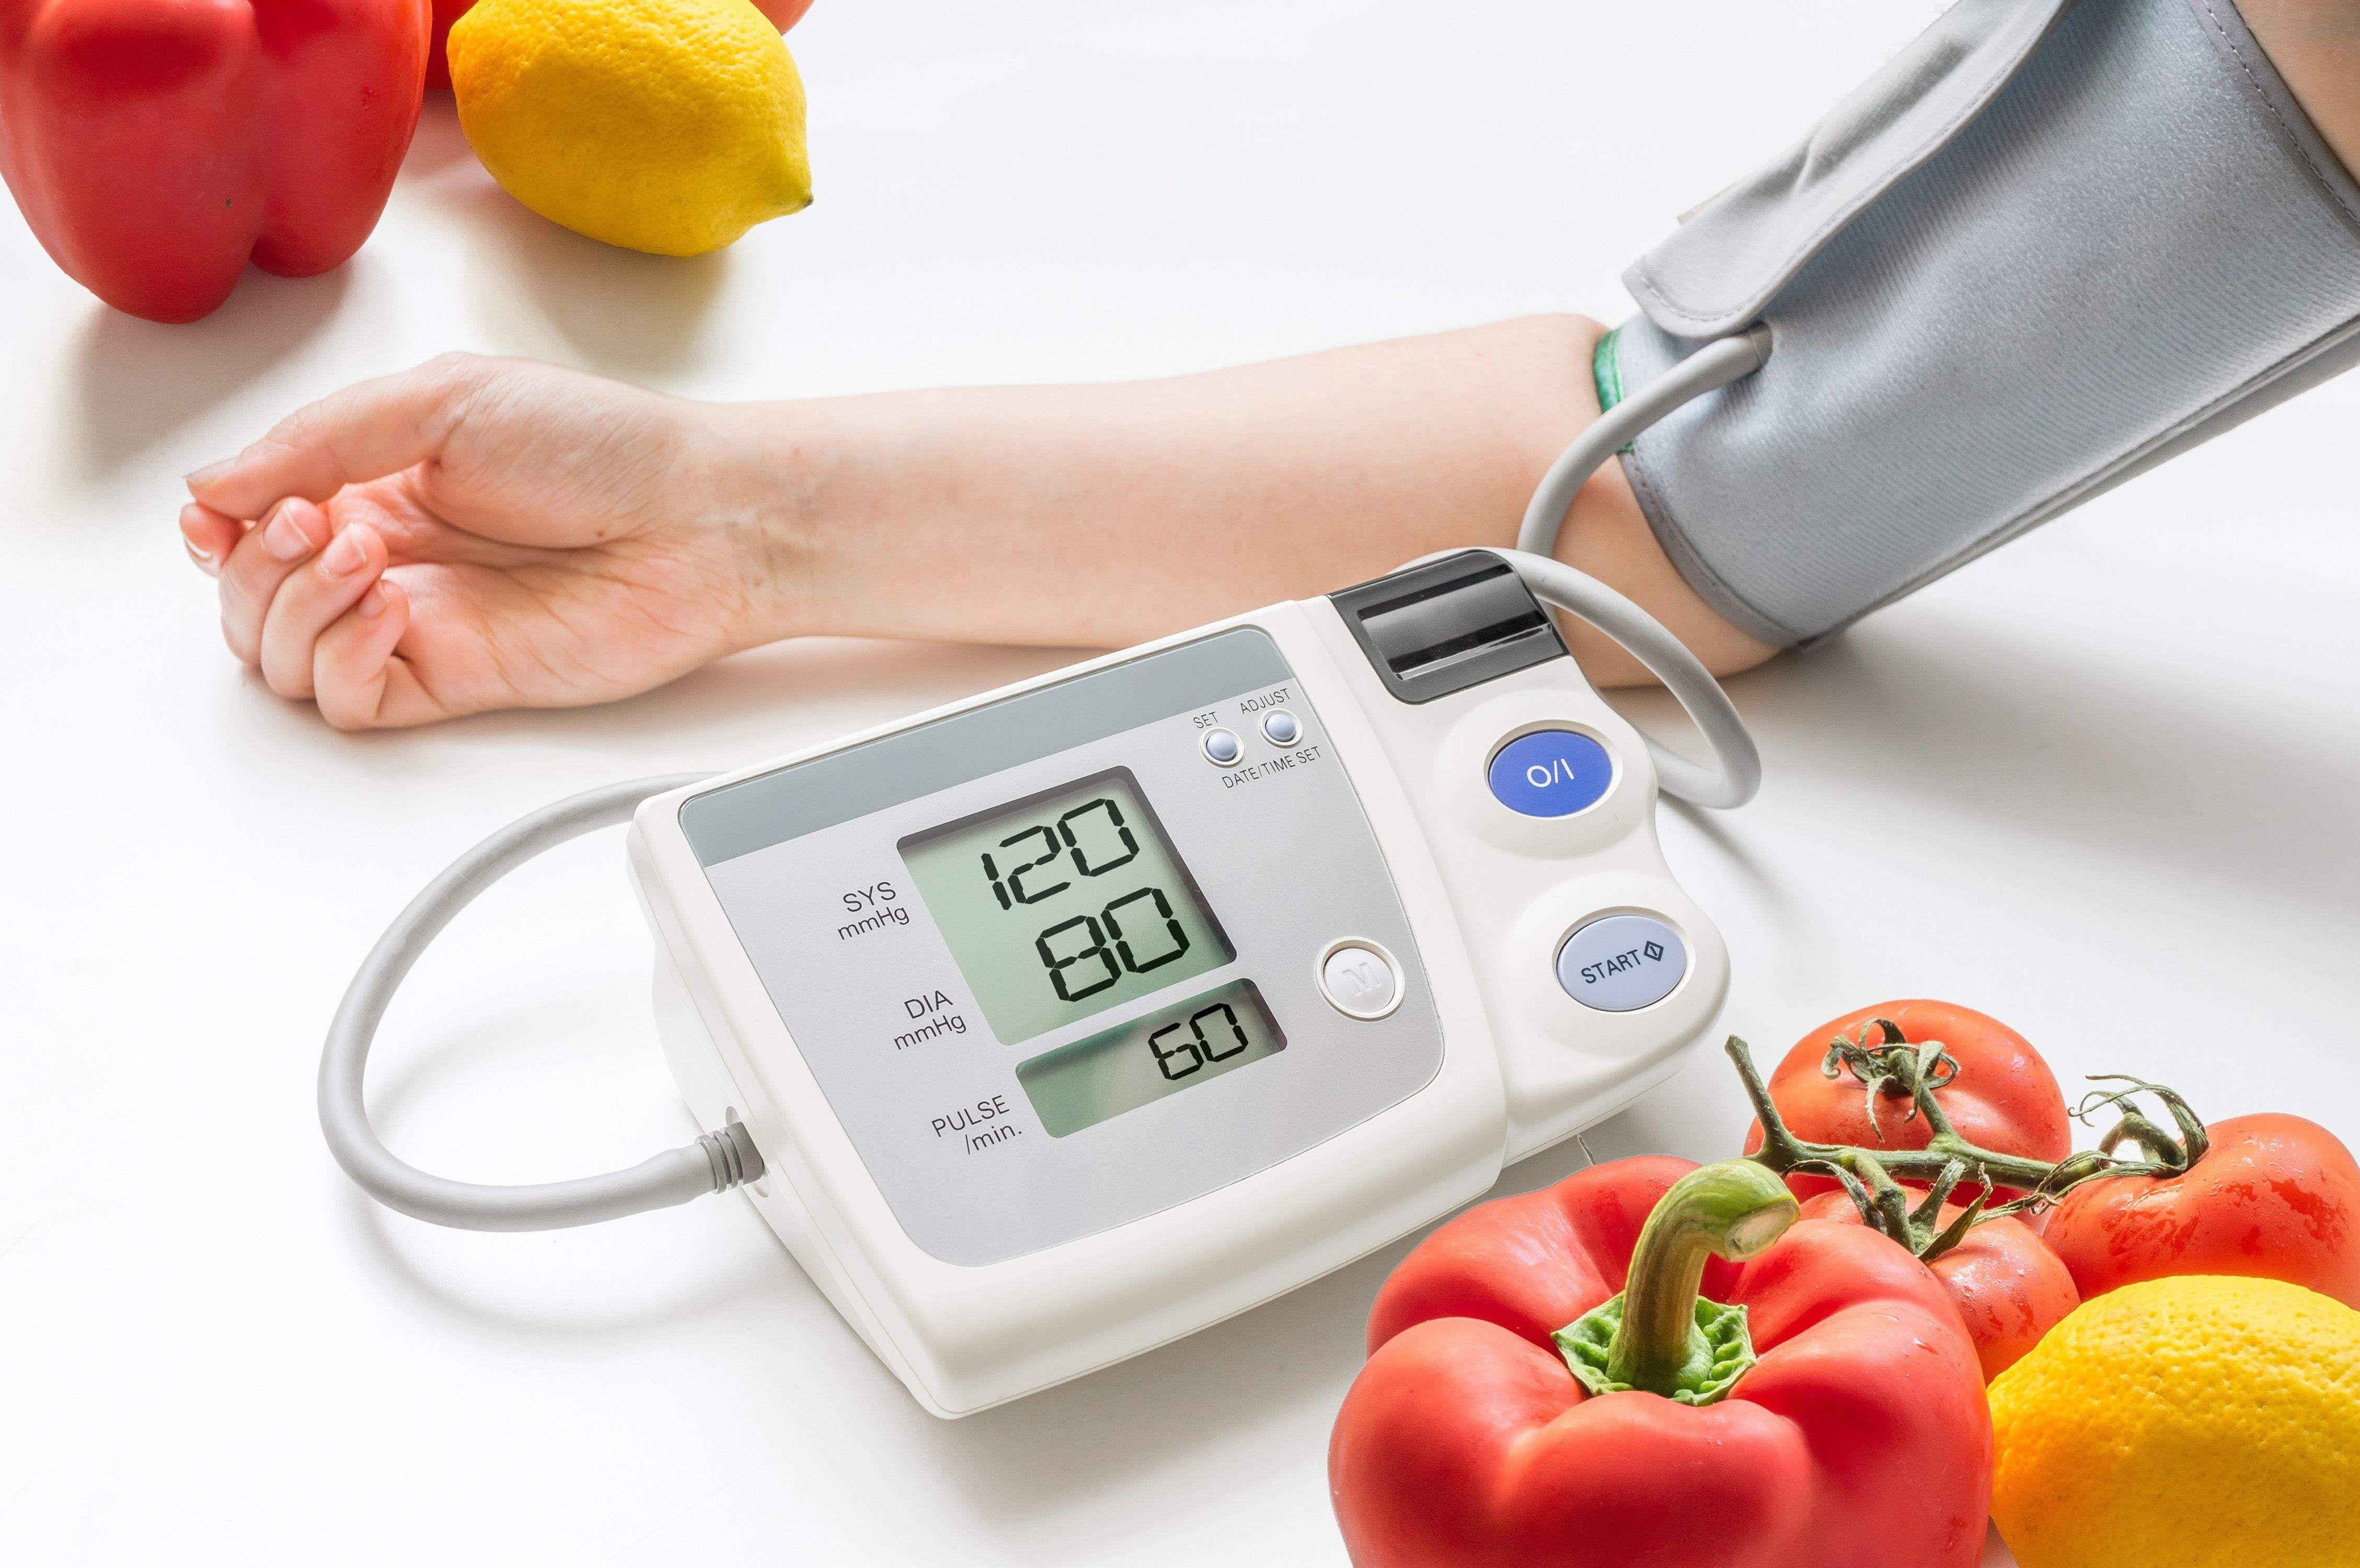 دستورالعمل سازمان جهانی بهداشت برای کاهش فشار خون